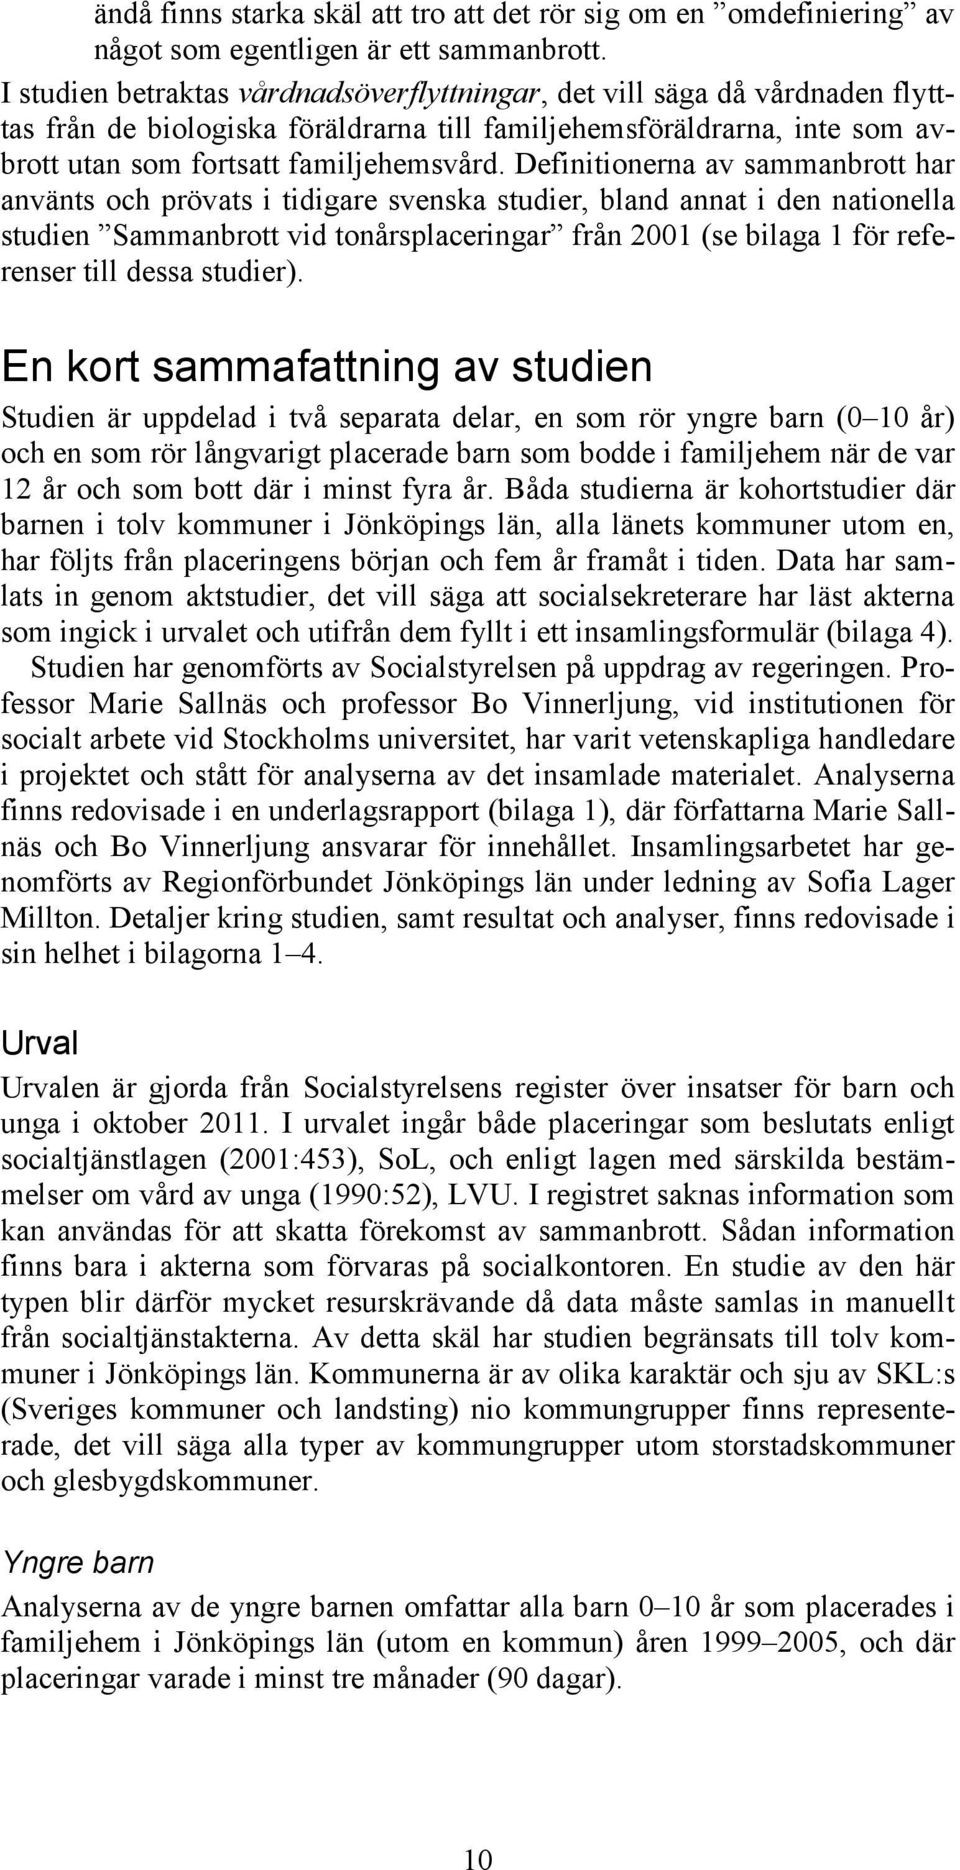 Definitionerna av sammanbrott har använts och prövats i tidigare svenska studier, bland annat i den nationella studien Sammanbrott vid tonårsplaceringar från 2001 (se bilaga 1 för referenser till